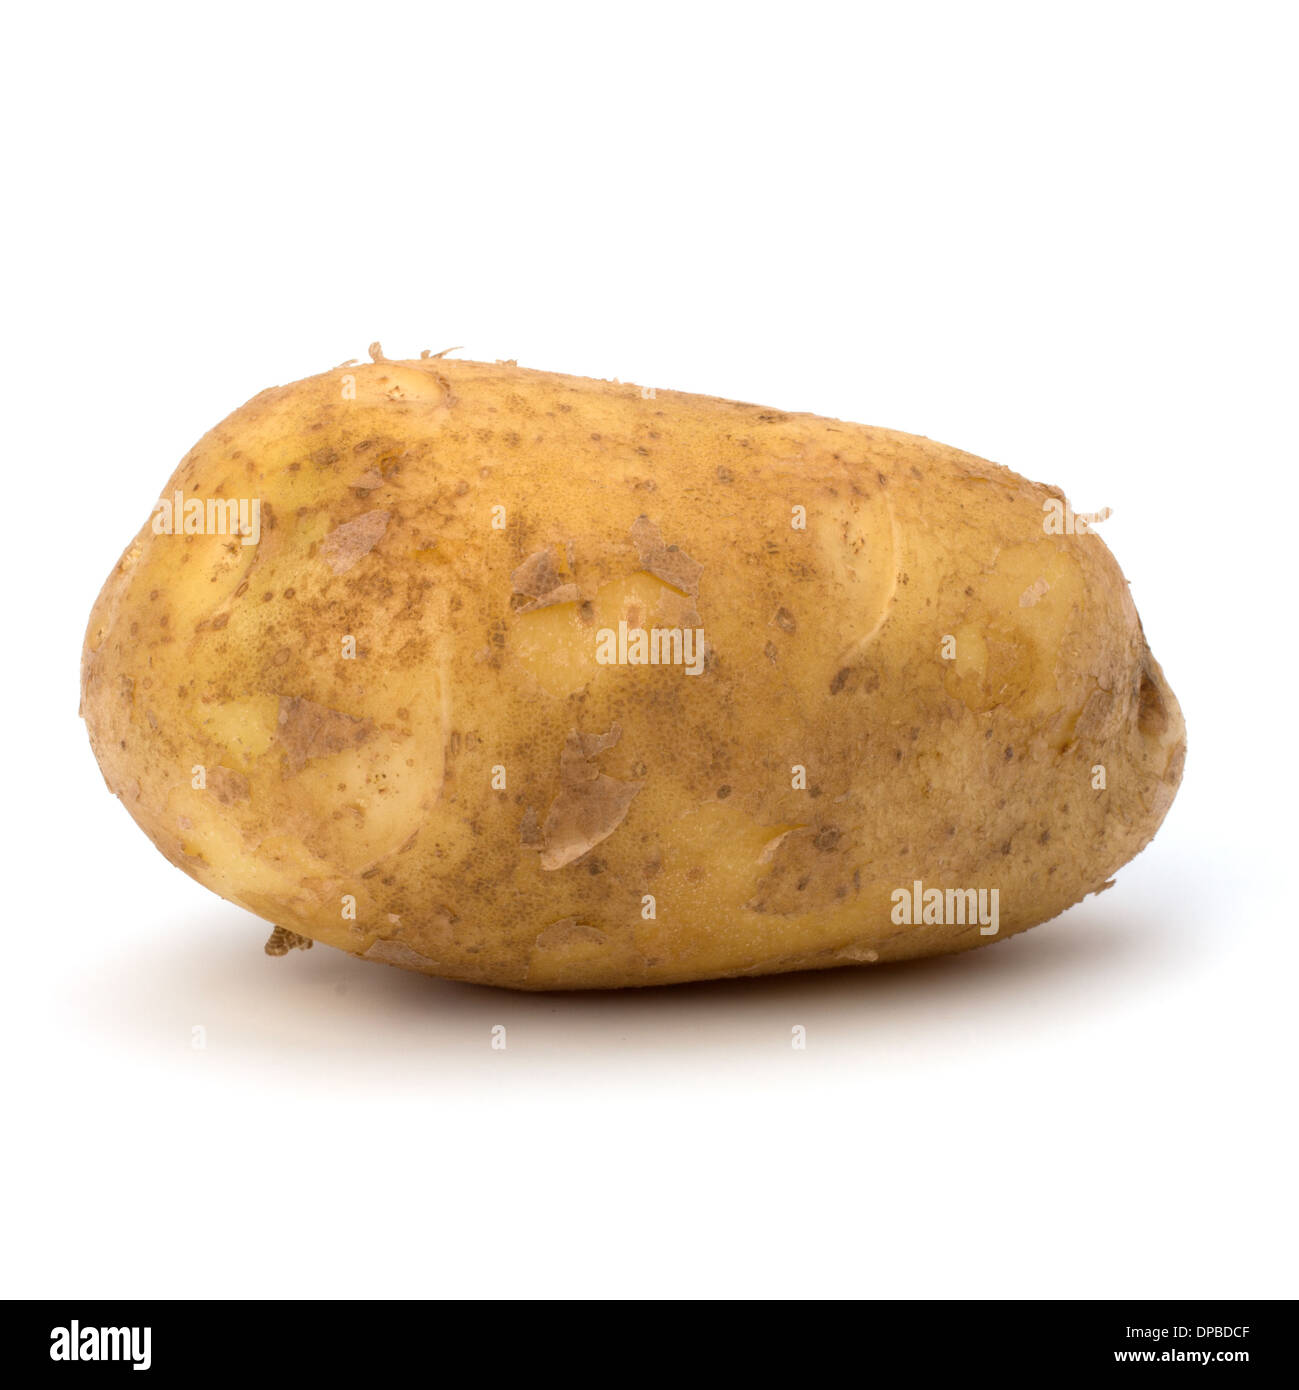 potato isolated on white background close up Stock Photo